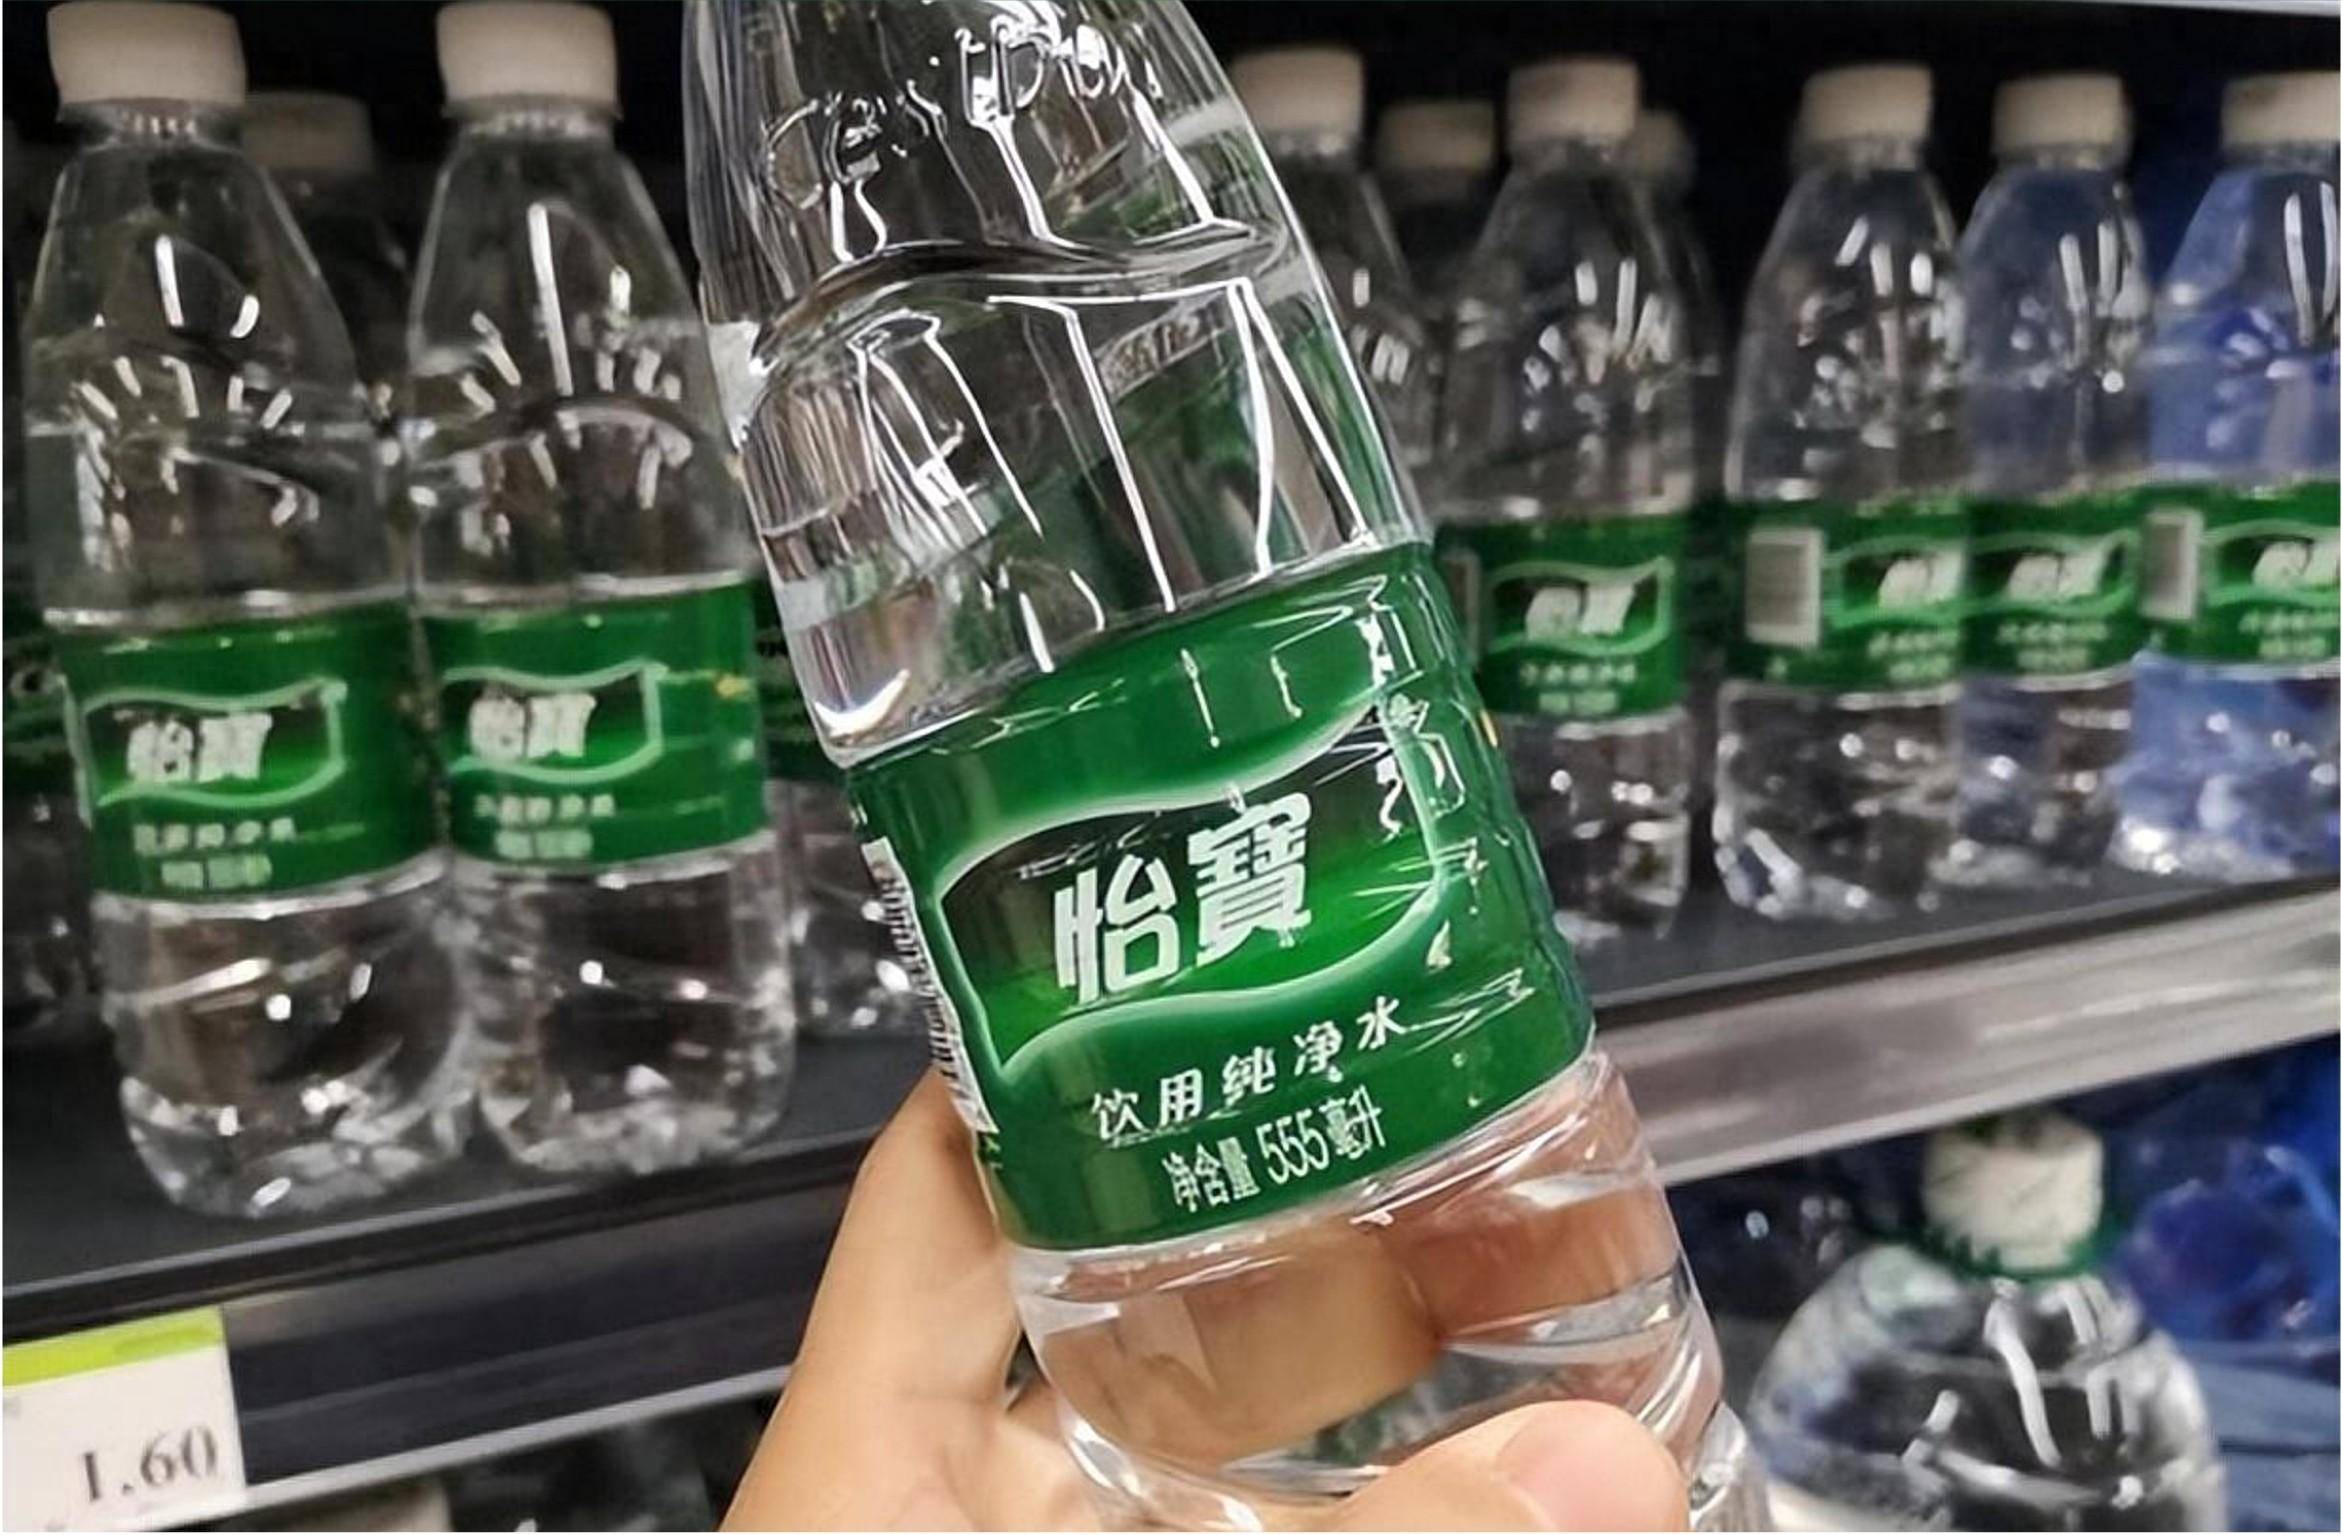 作为华润饮料旗下最主力最知名的品牌,怡宝凭借纯净水的定位,一年卖